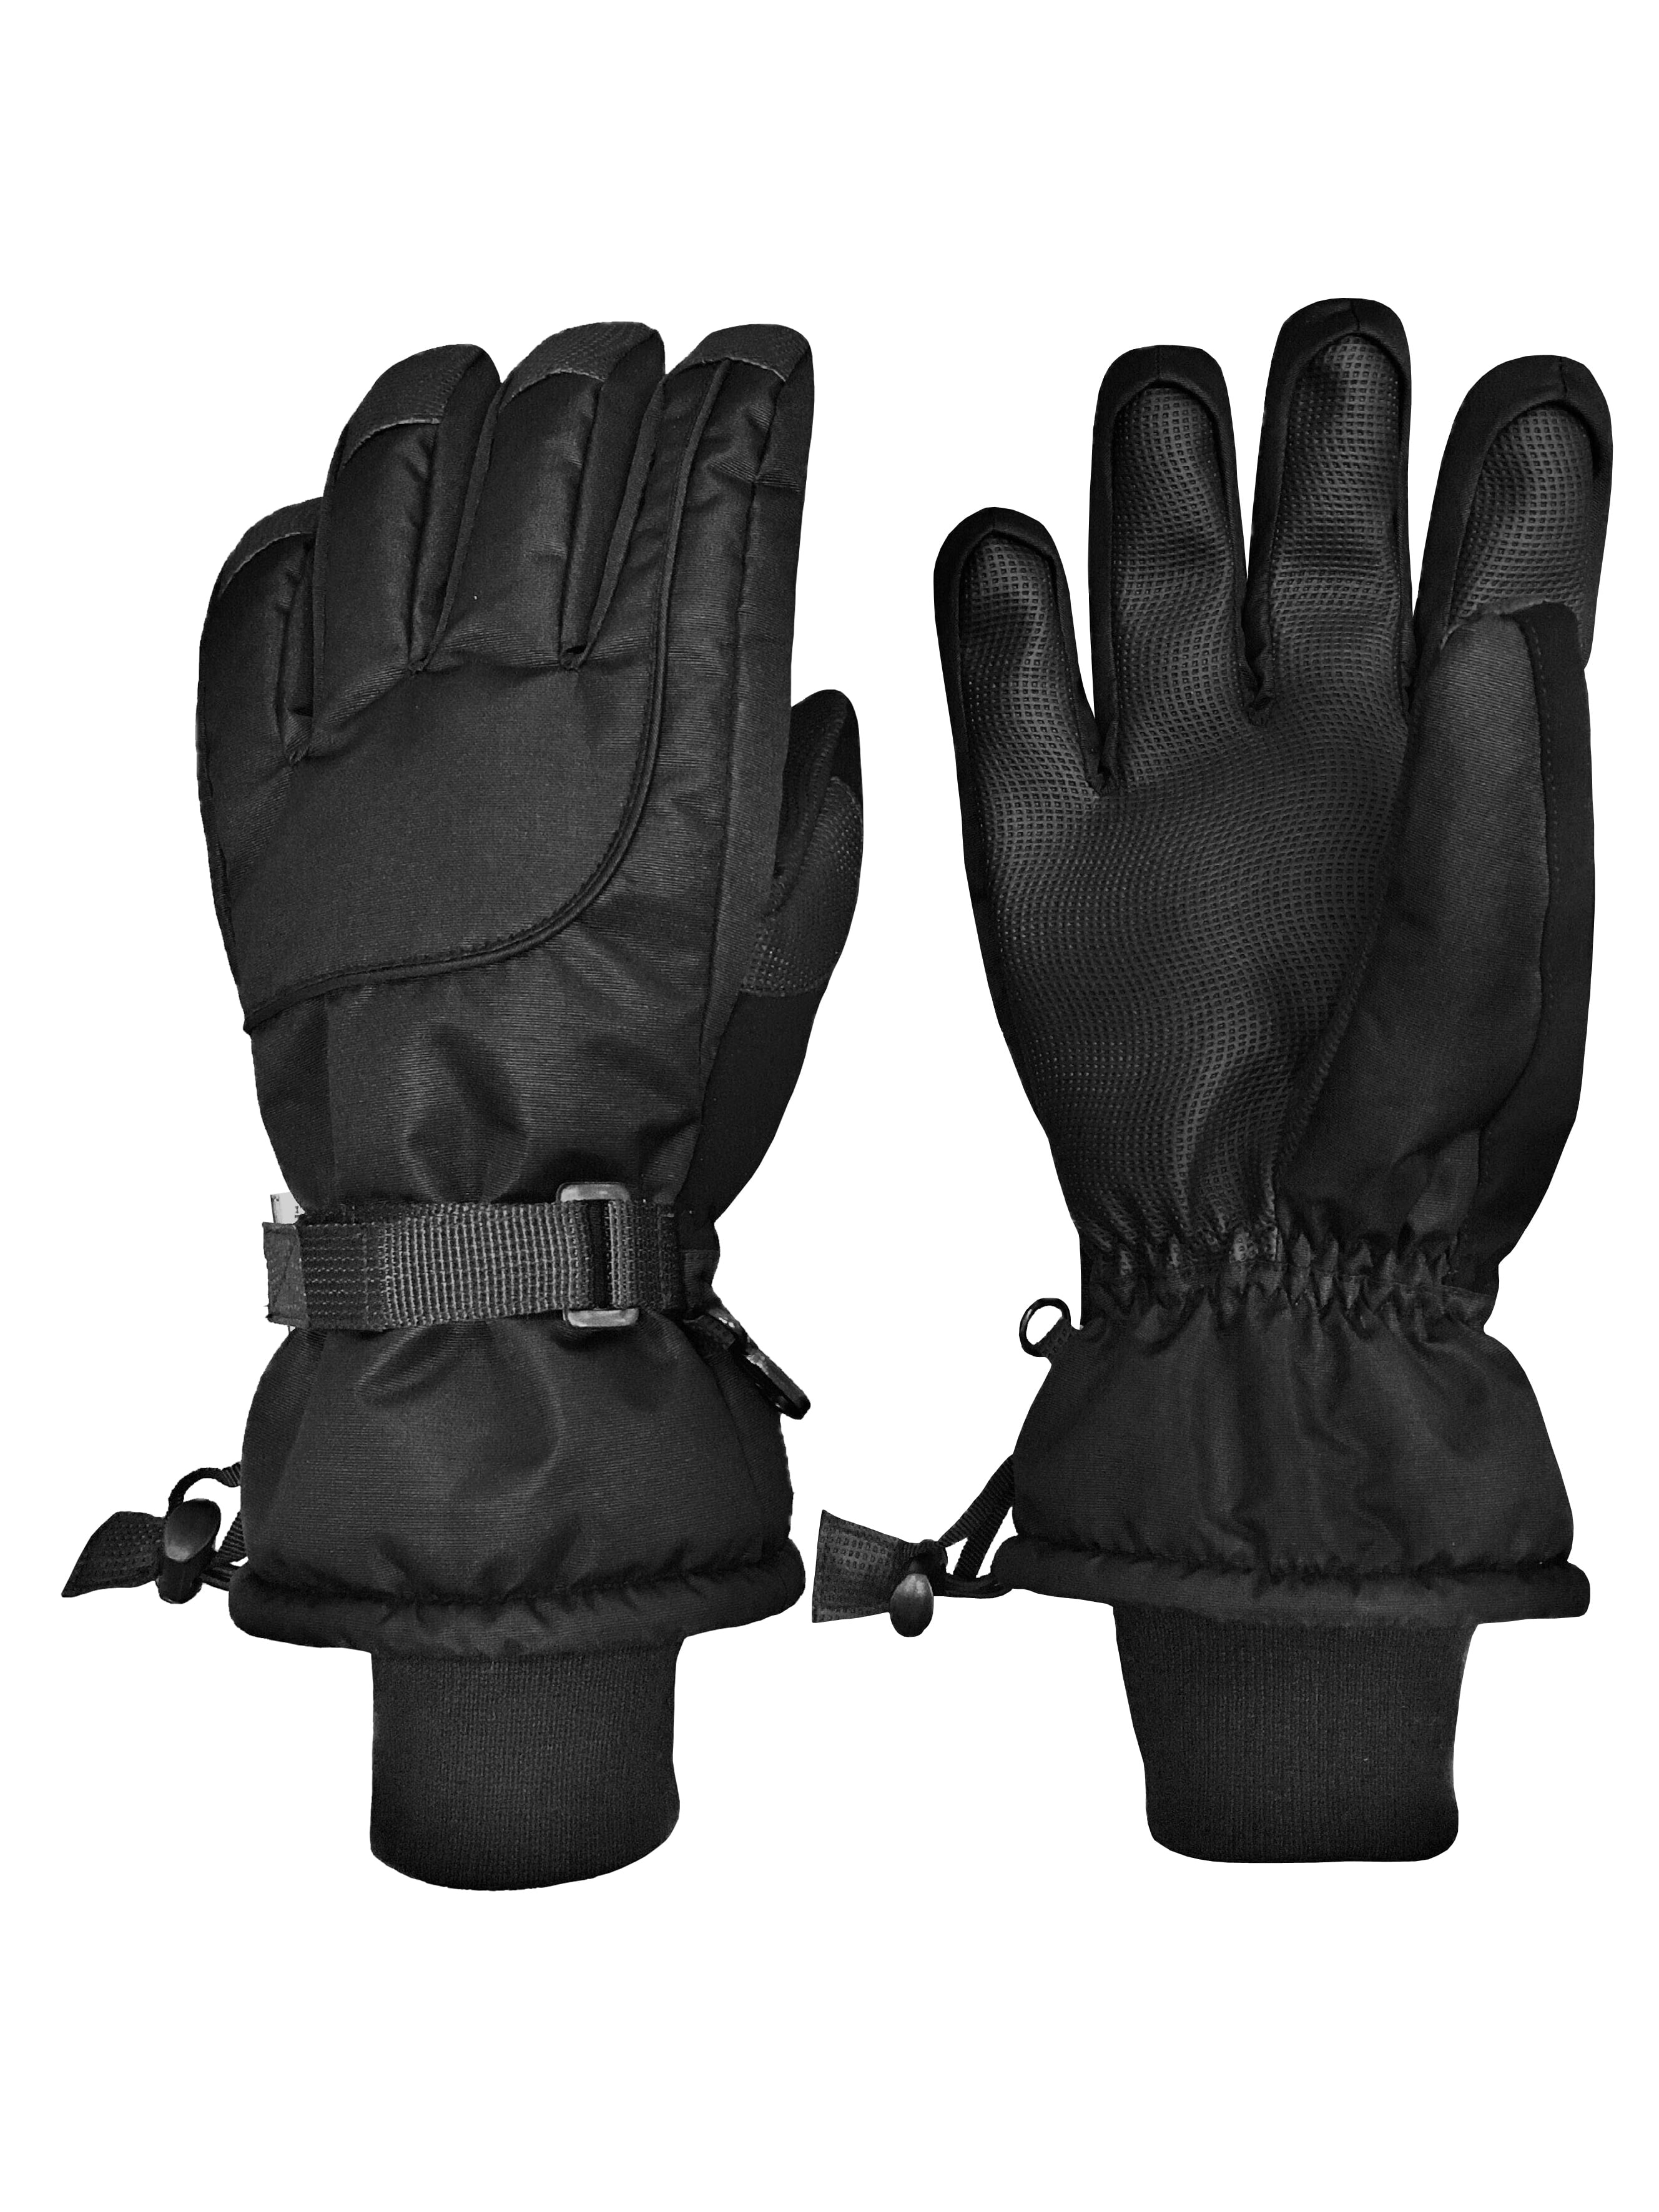 N'Ice Caps Thinsulate - manoplas y guantes de esquí impermeables (100  gramos) para hombres y mujeres.